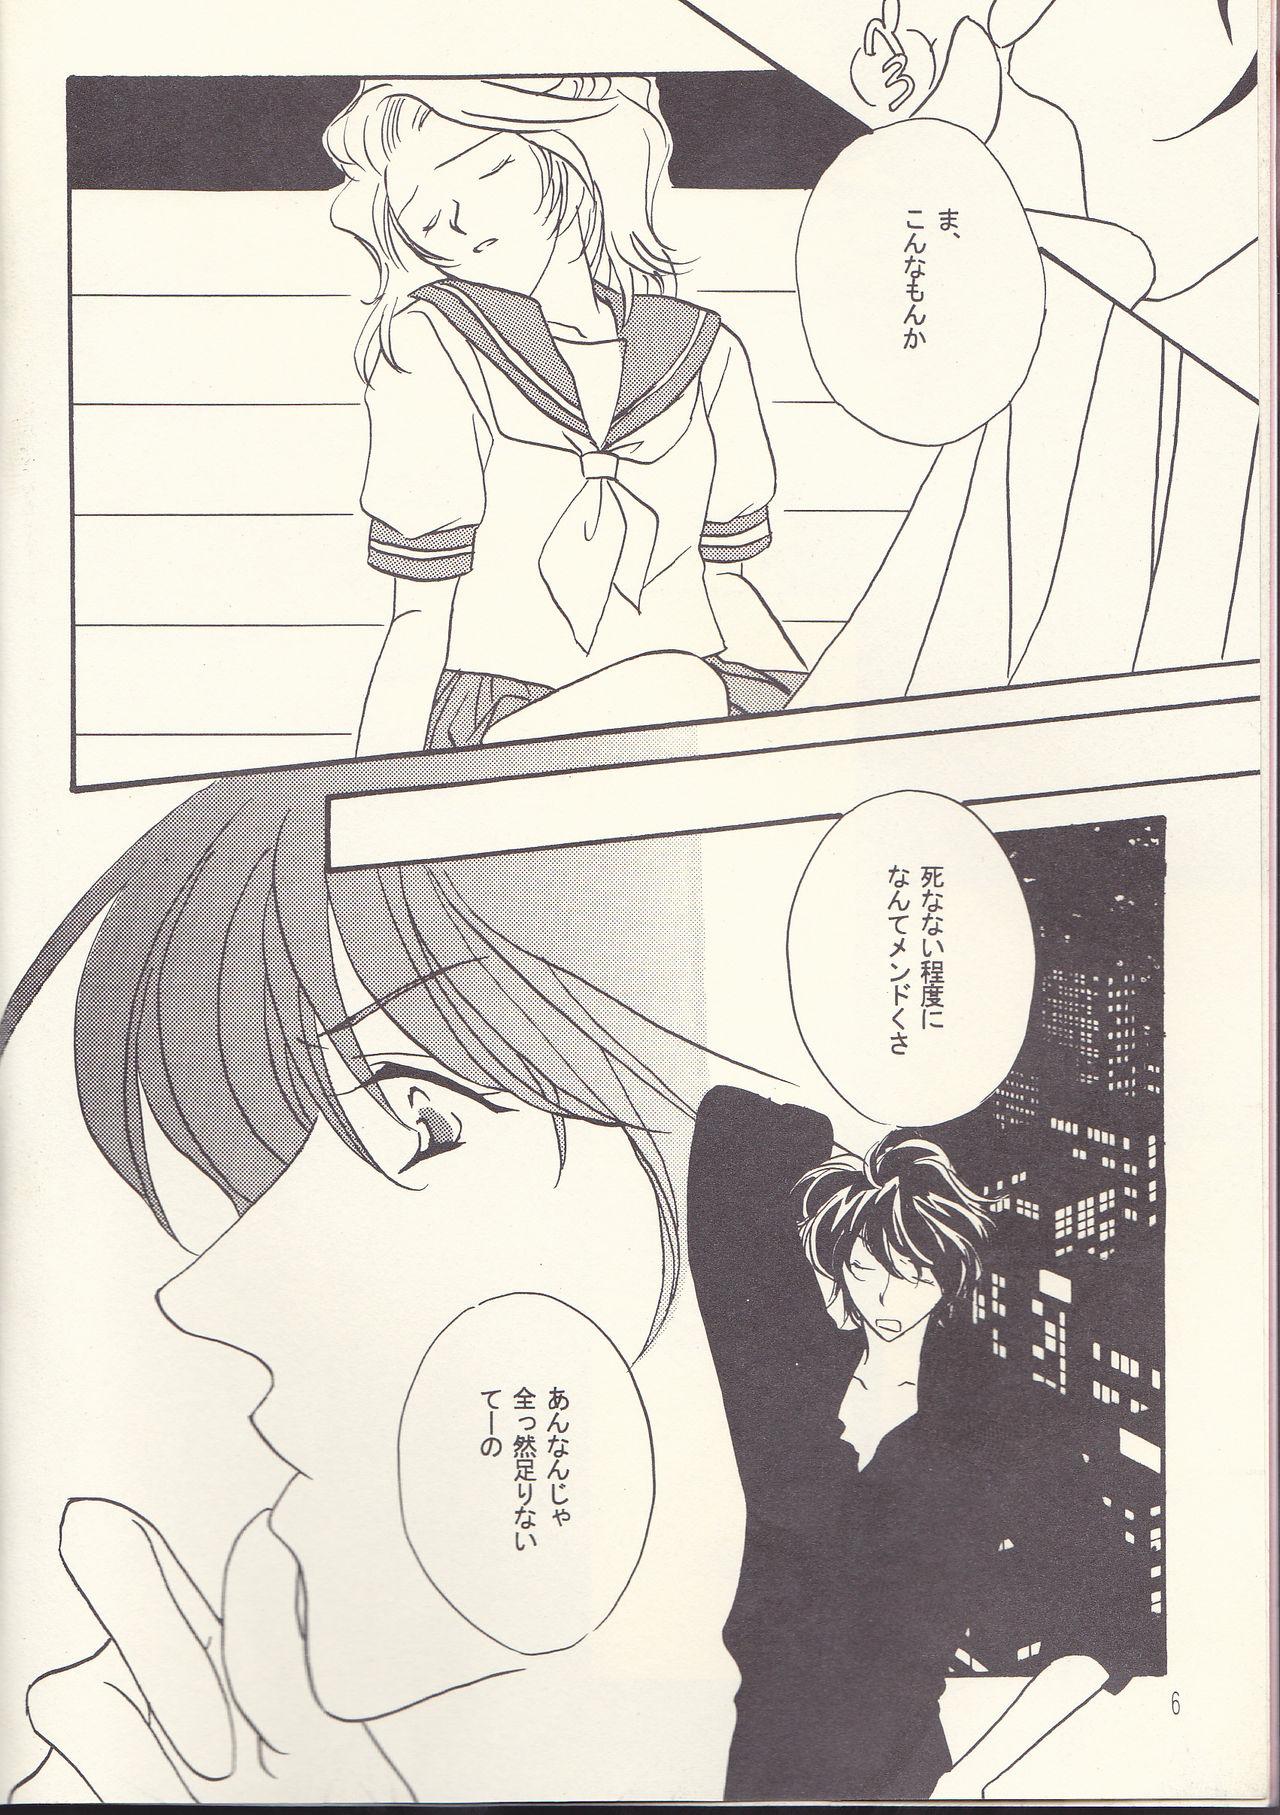 Audition Kagayai usagi - Detective conan Masterbation - Page 6